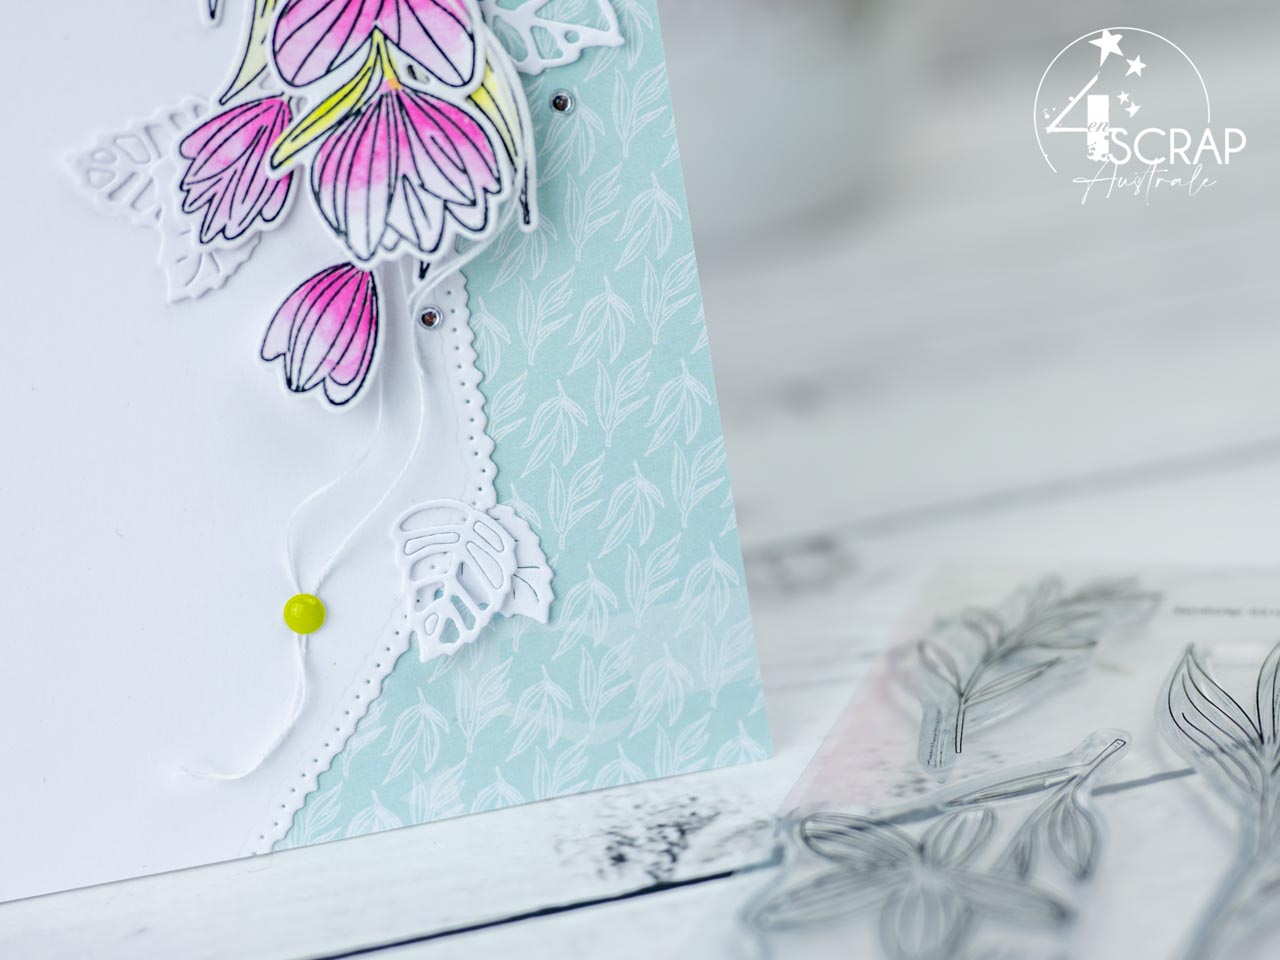 Création d'un duo de cartes de printemps avec de jolies à l'aquarelle, feuillages blancs et quelques diamants.